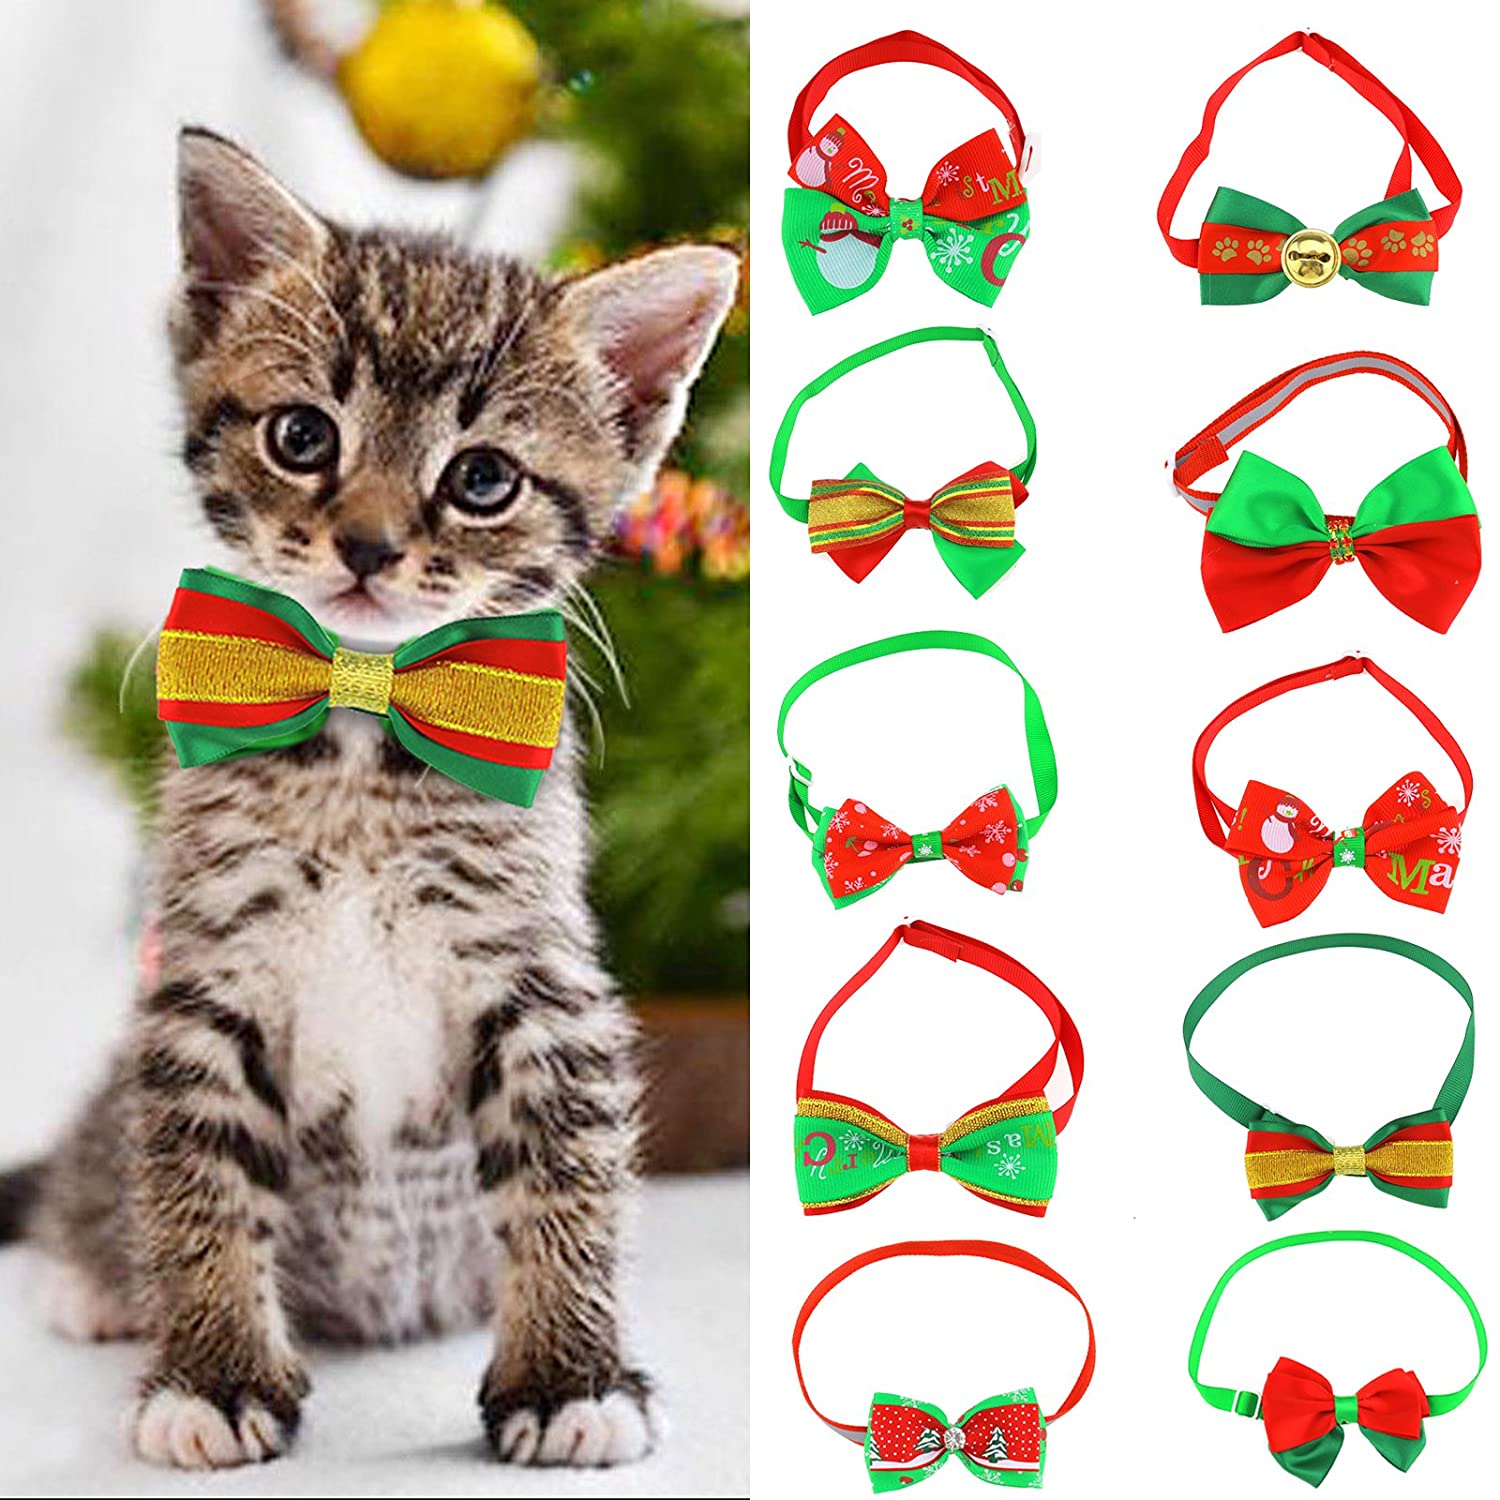  OTOTEC 10 Piezas de Navidad Mascota Gato Perro Pajarita Ajustable Collar Hebillas Corbata patrón de Navidad Accesorios de Aseo, 19-34 cm 